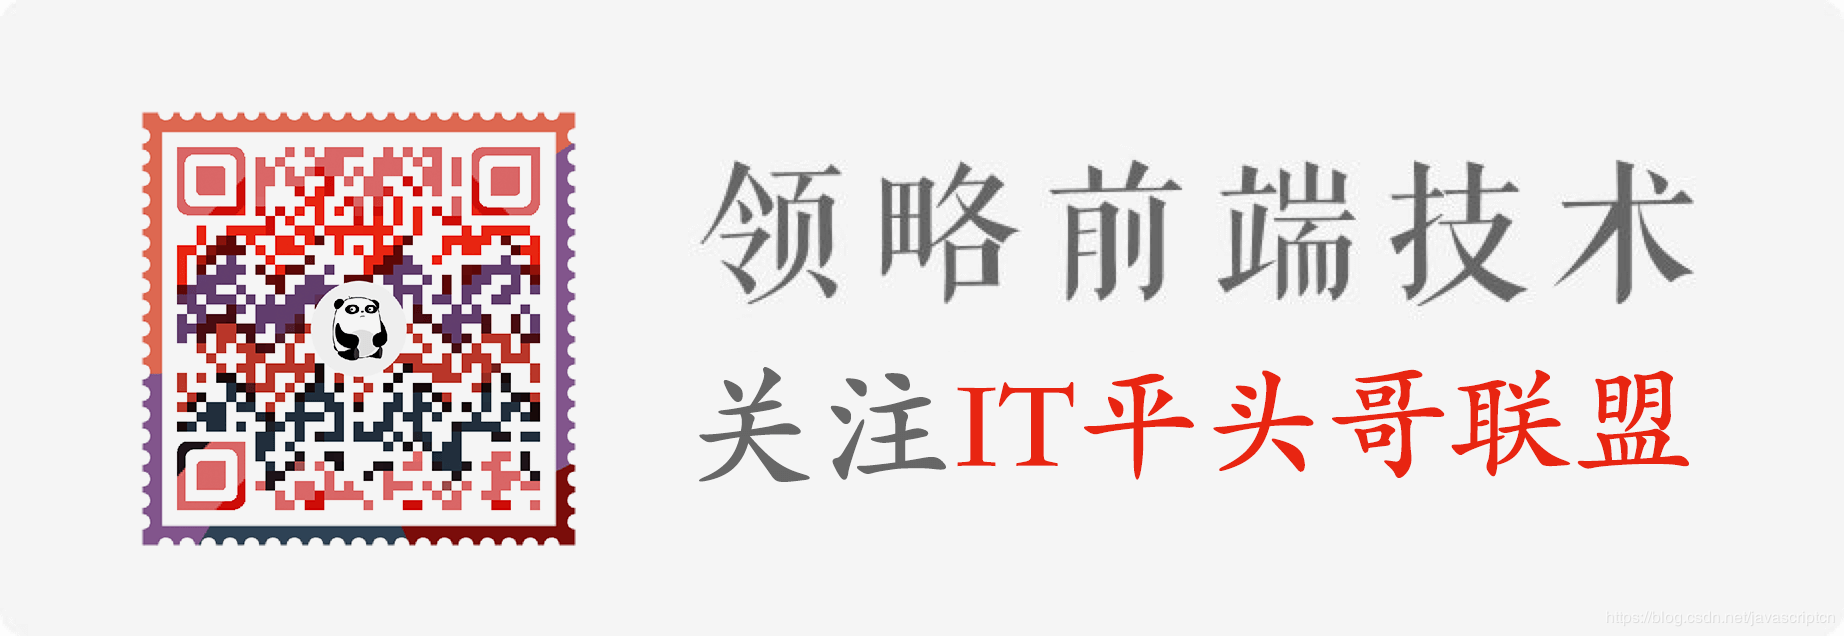 JS中文网 - 前端进阶资源教程，领略前端前沿,关注IT平头哥联盟